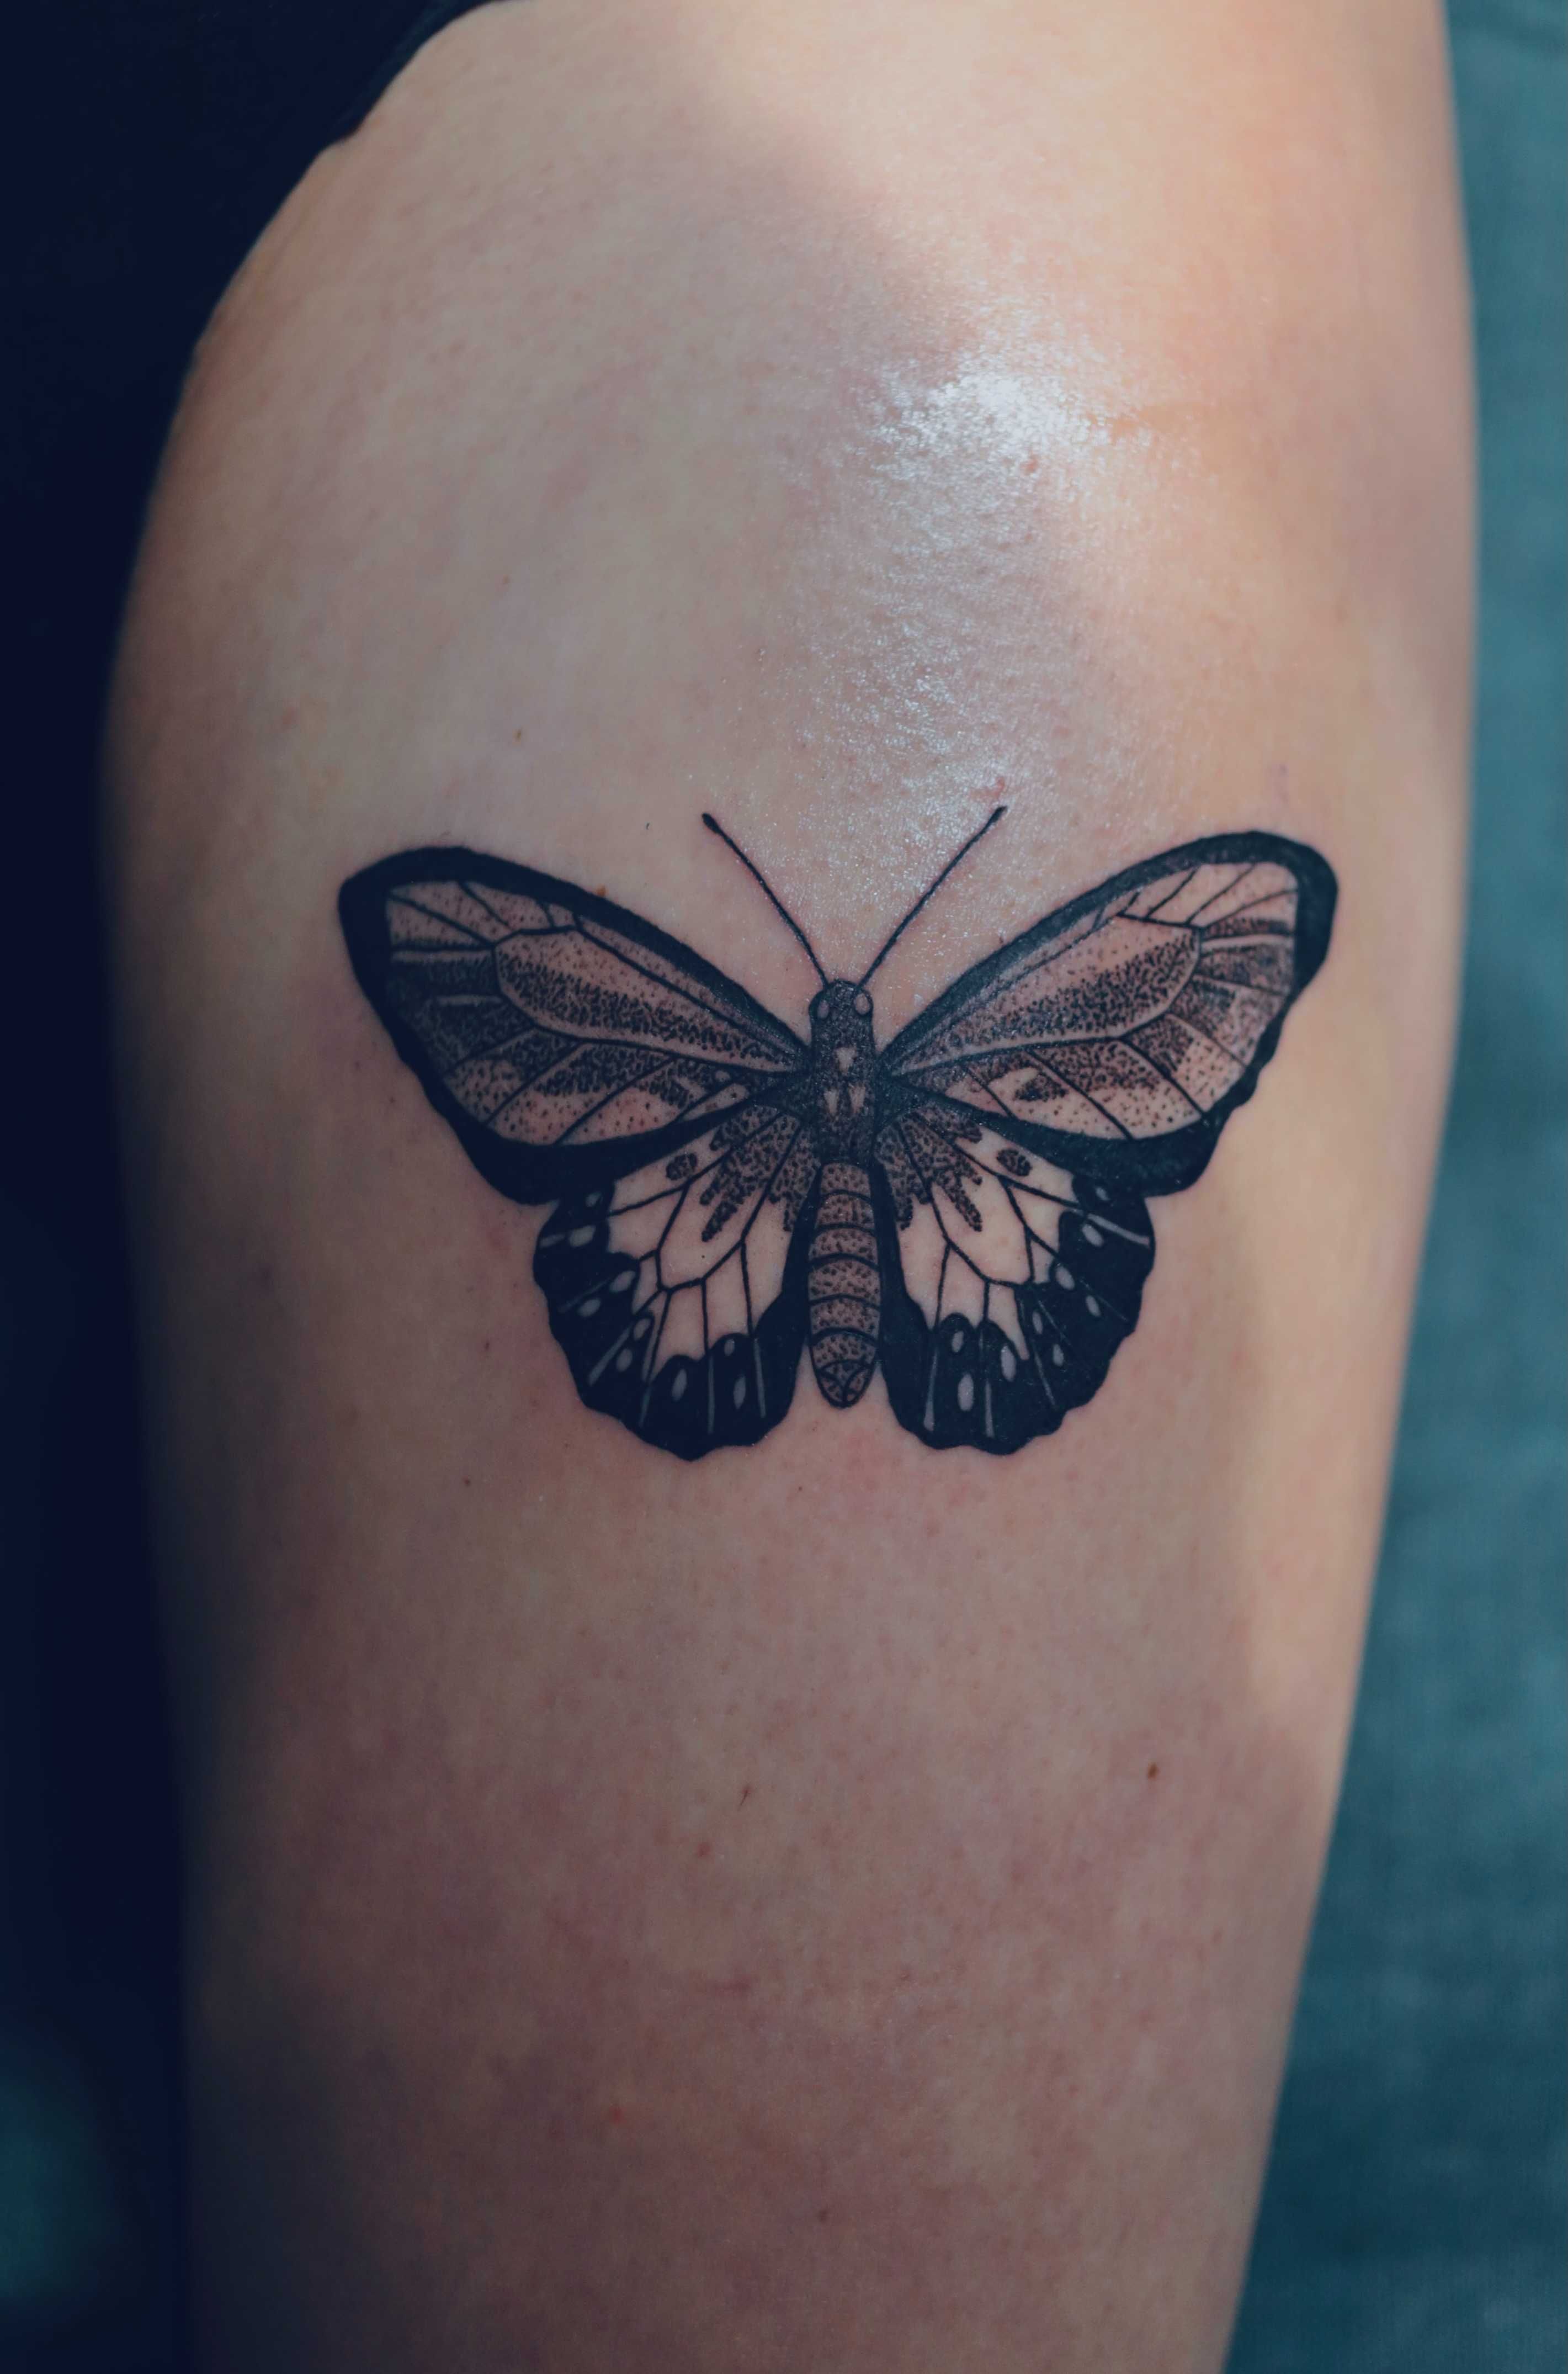 Tatuaż/ Tattoo Kraków